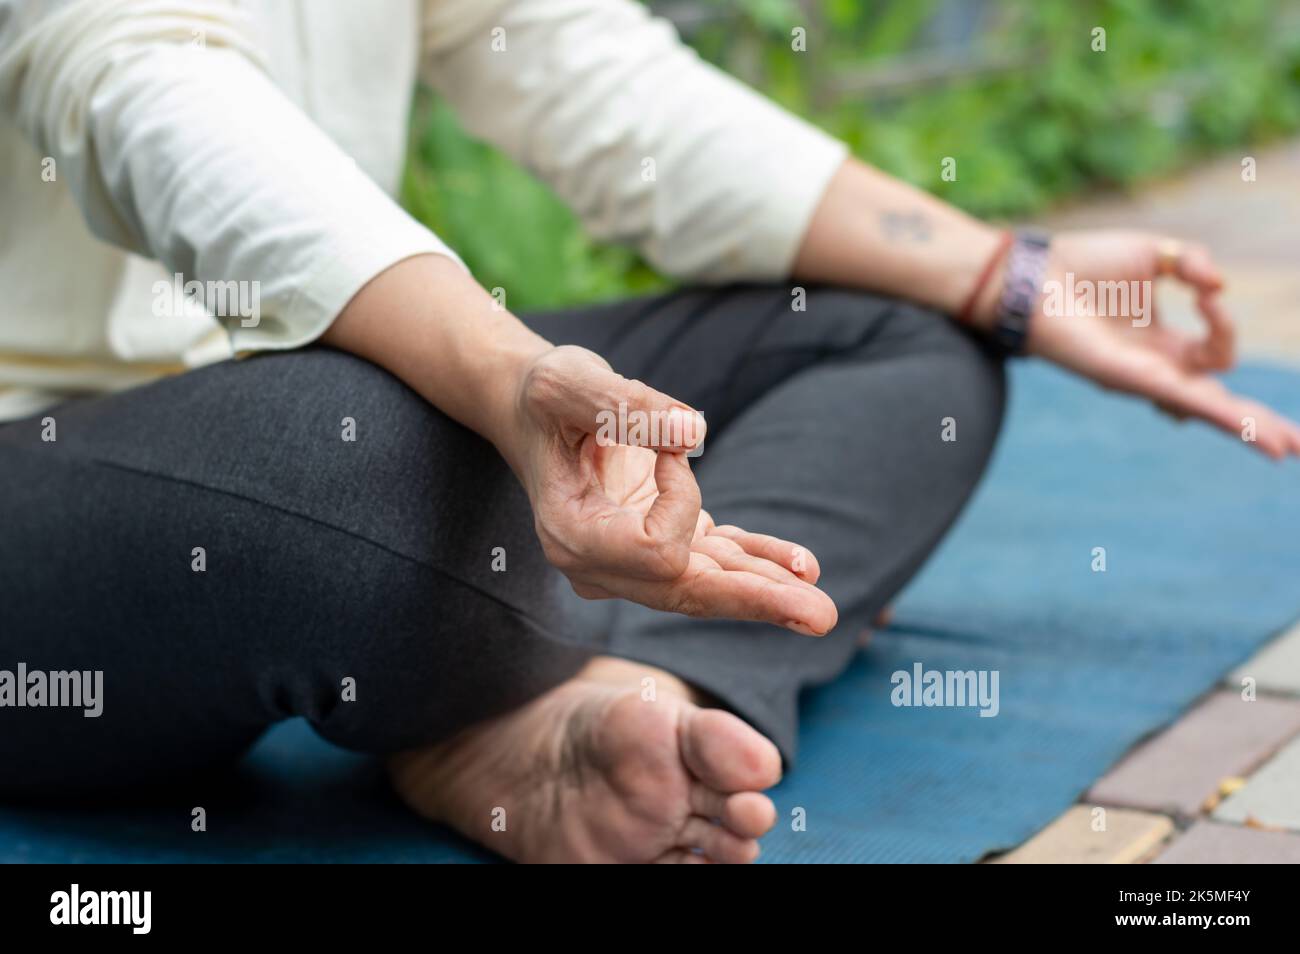 Nahaufnahme Frau Mudra Handbewegung beim Yoga Entspannen in Lotusposition auf Matte sitzend. Im Freien. Meditation in der Natur üben. Hintergrundbild. Stockfoto